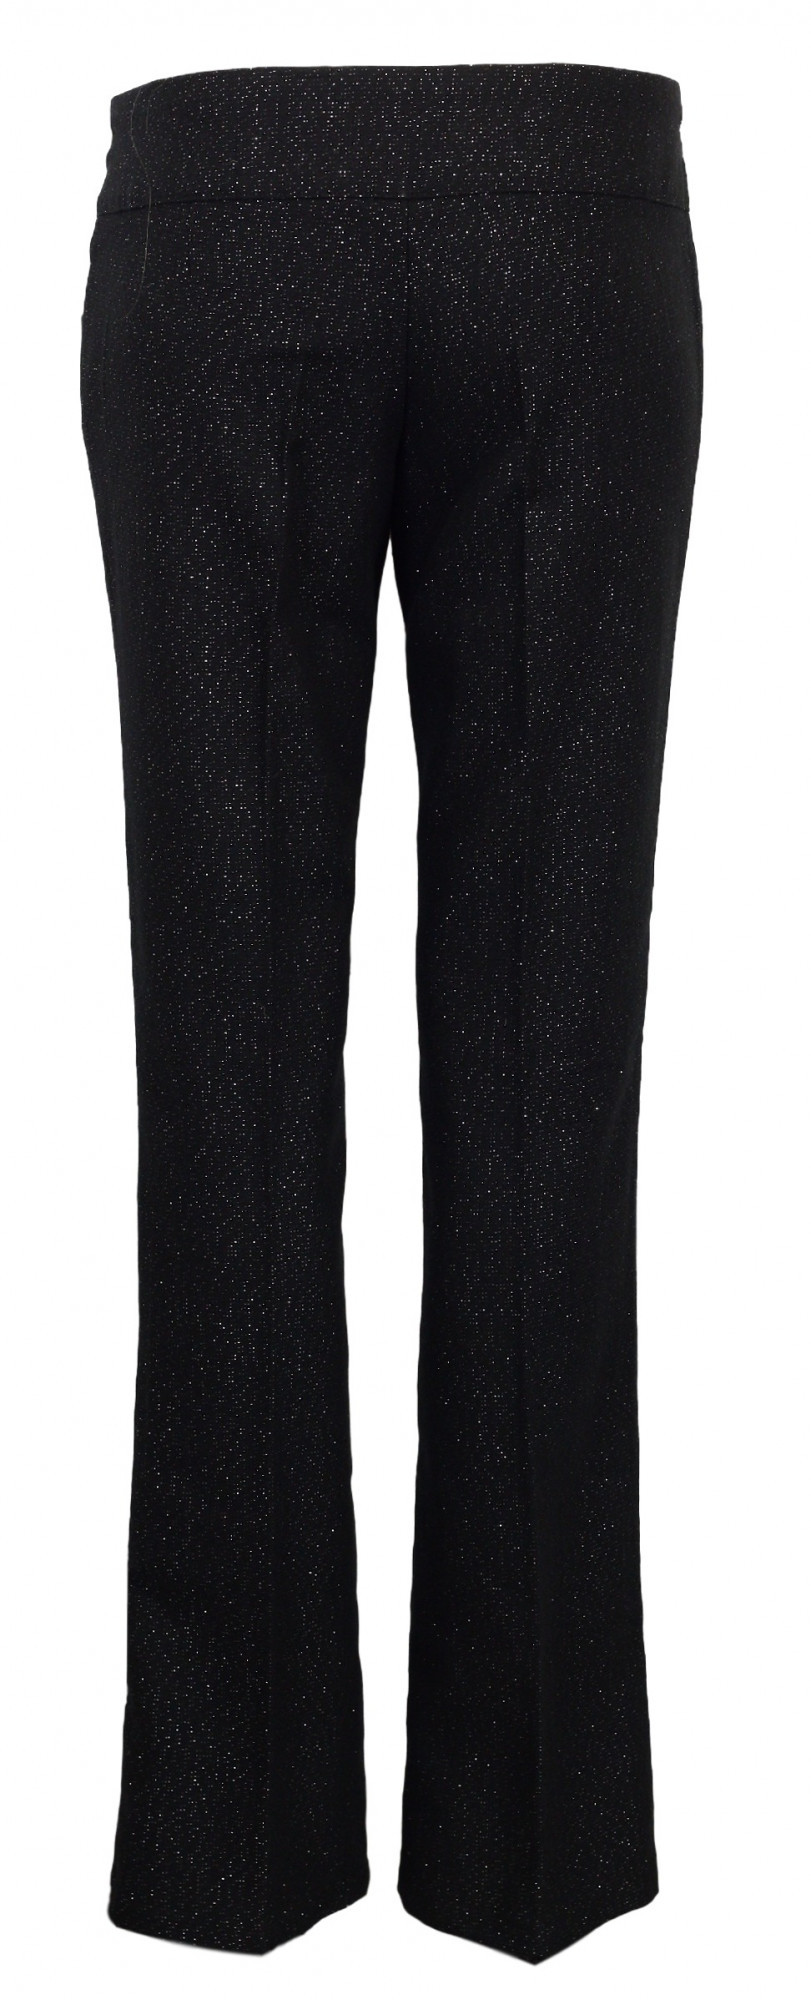 Dámské kalhoty - Koucla černá s stříbrnou nitkou 40